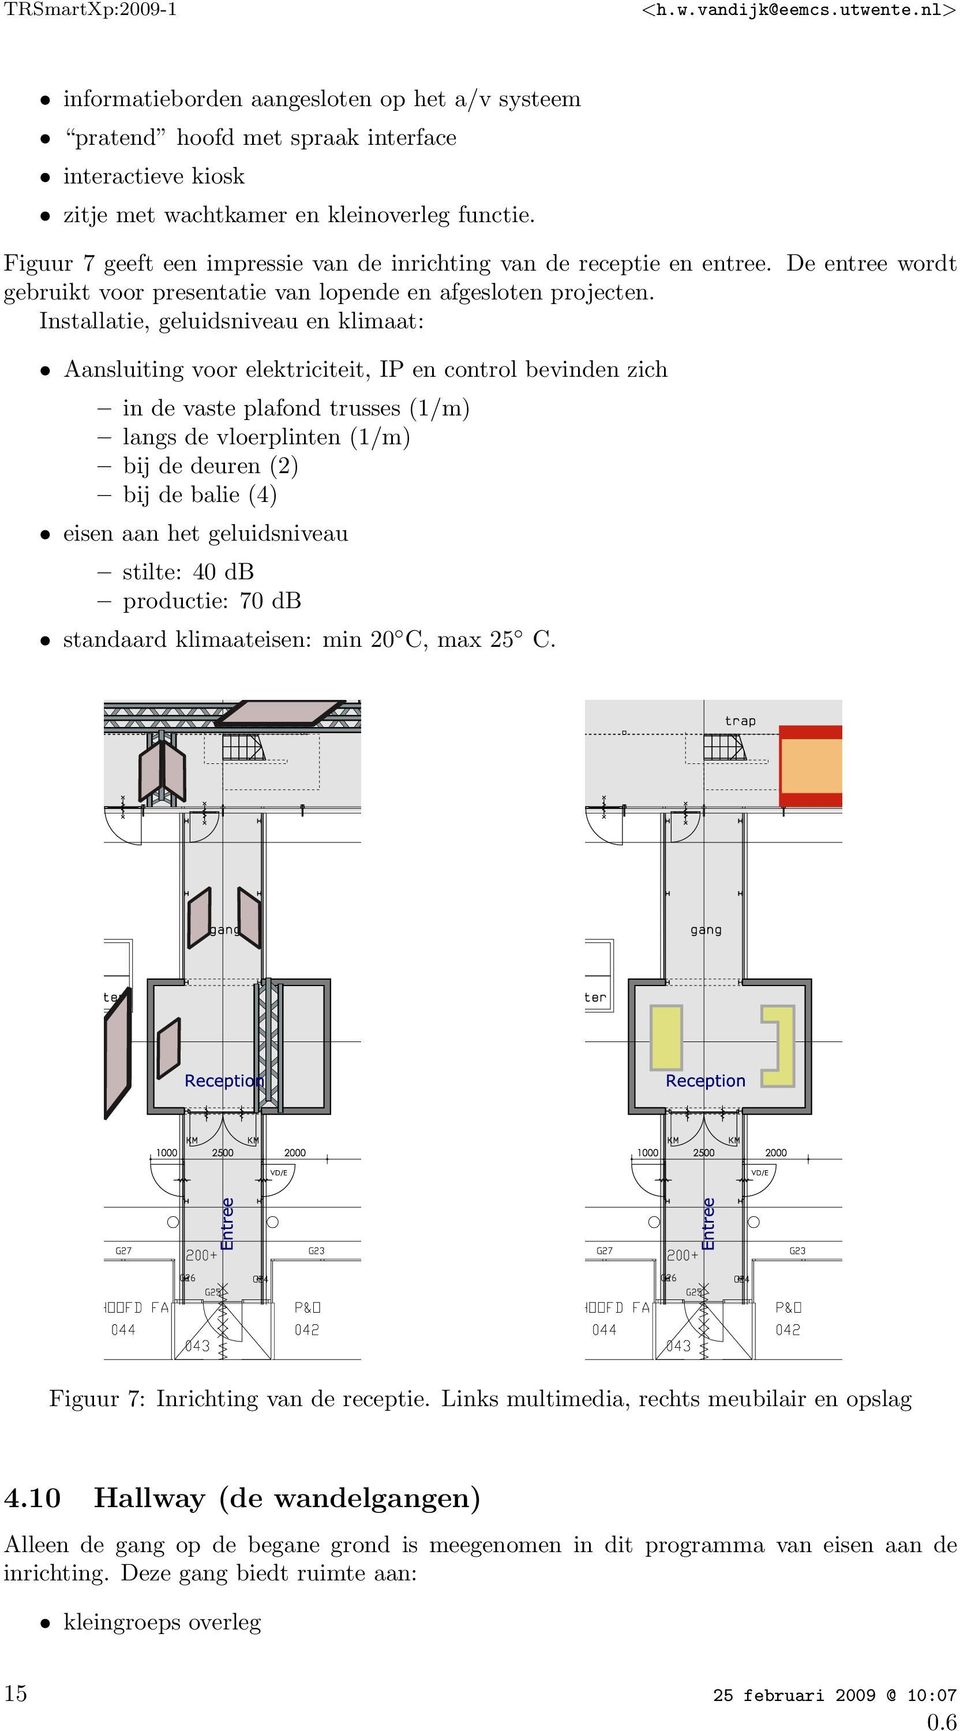 Installatie, geluidsniveau en klimaat: Aansluiting voor elektriciteit, IP en control bevinden zich in de vaste plafond trusses (1/m) langs de vloerplinten (1/m) bij de deuren (2) bij de balie (4)